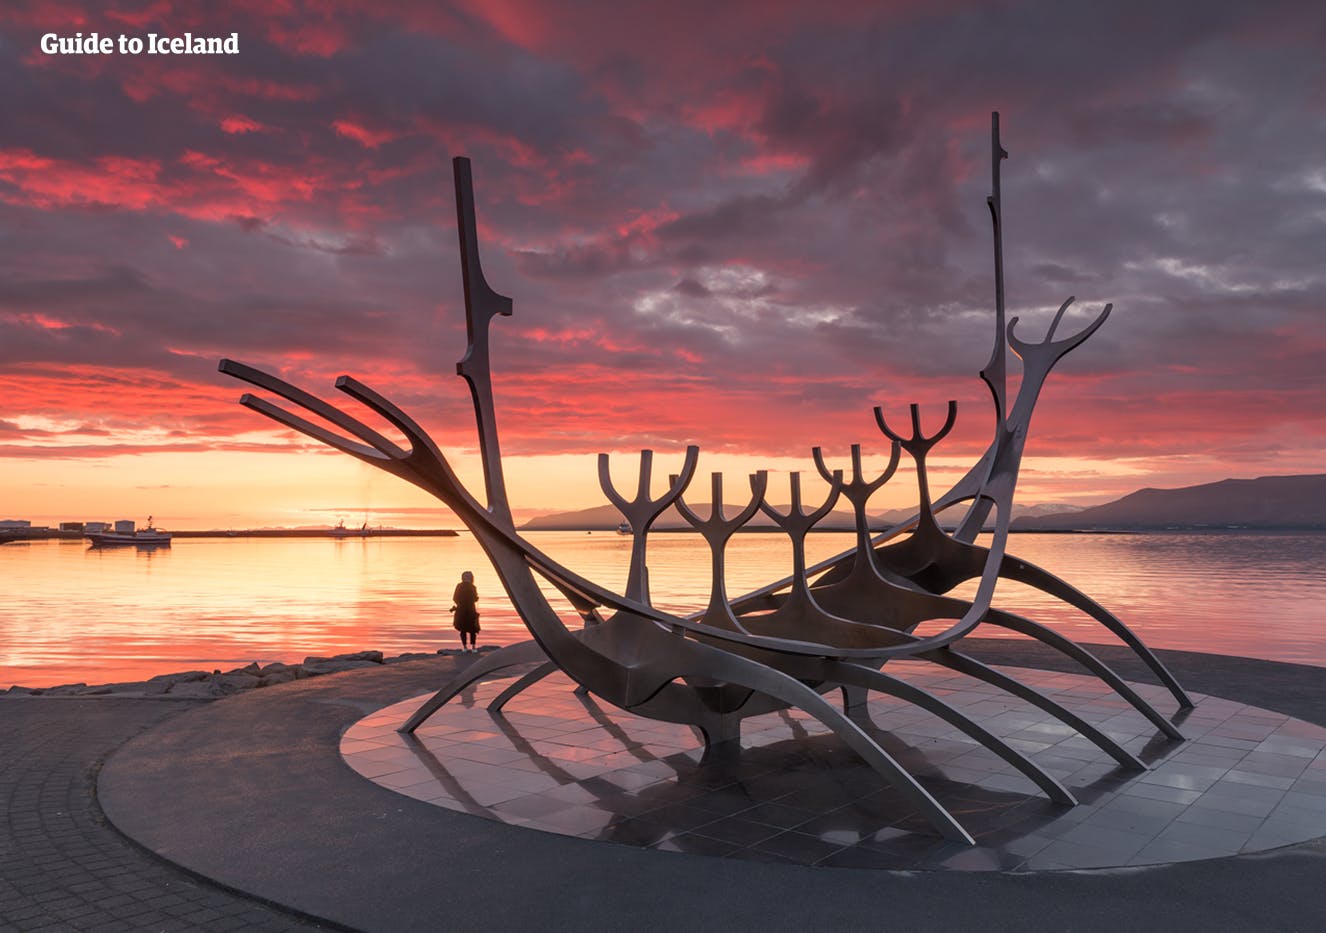 El Monumento Viajero del Sol representado en la costa de Reikiavik al atardecer en verano.